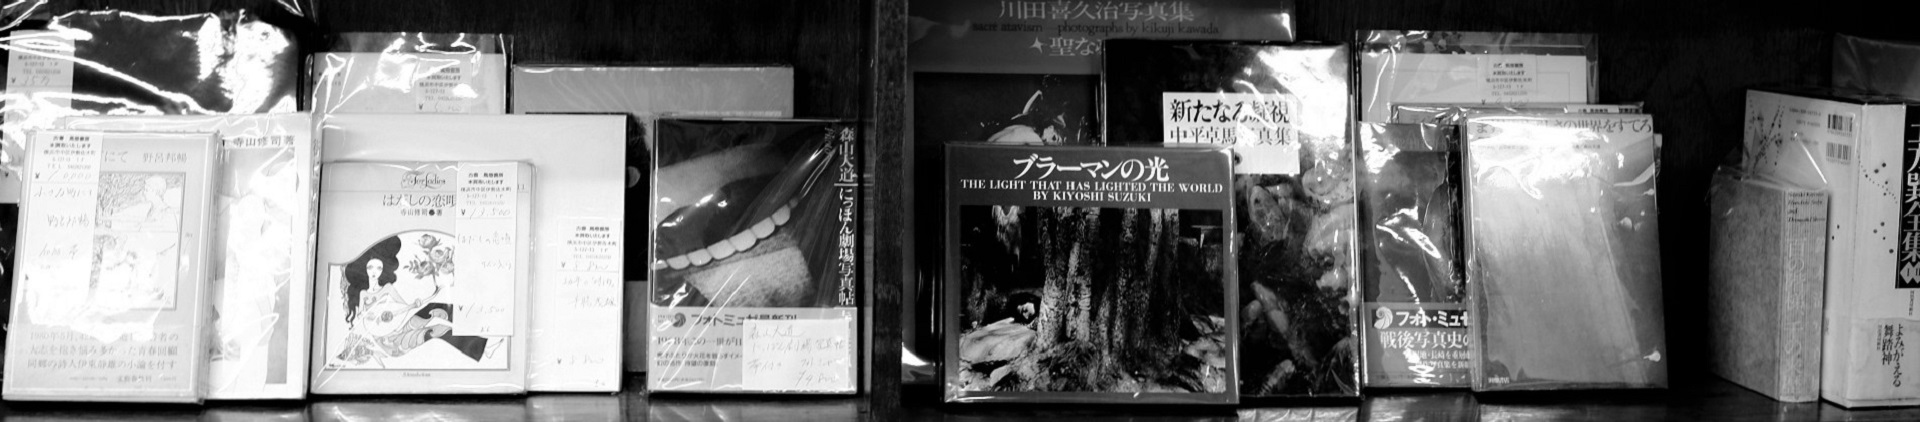 初版本 グスコーブドリの伝記 宮澤賢治 羽田書店 高価買取いたします 横浜の古本屋 古書馬燈書房 古書 馬燈書房